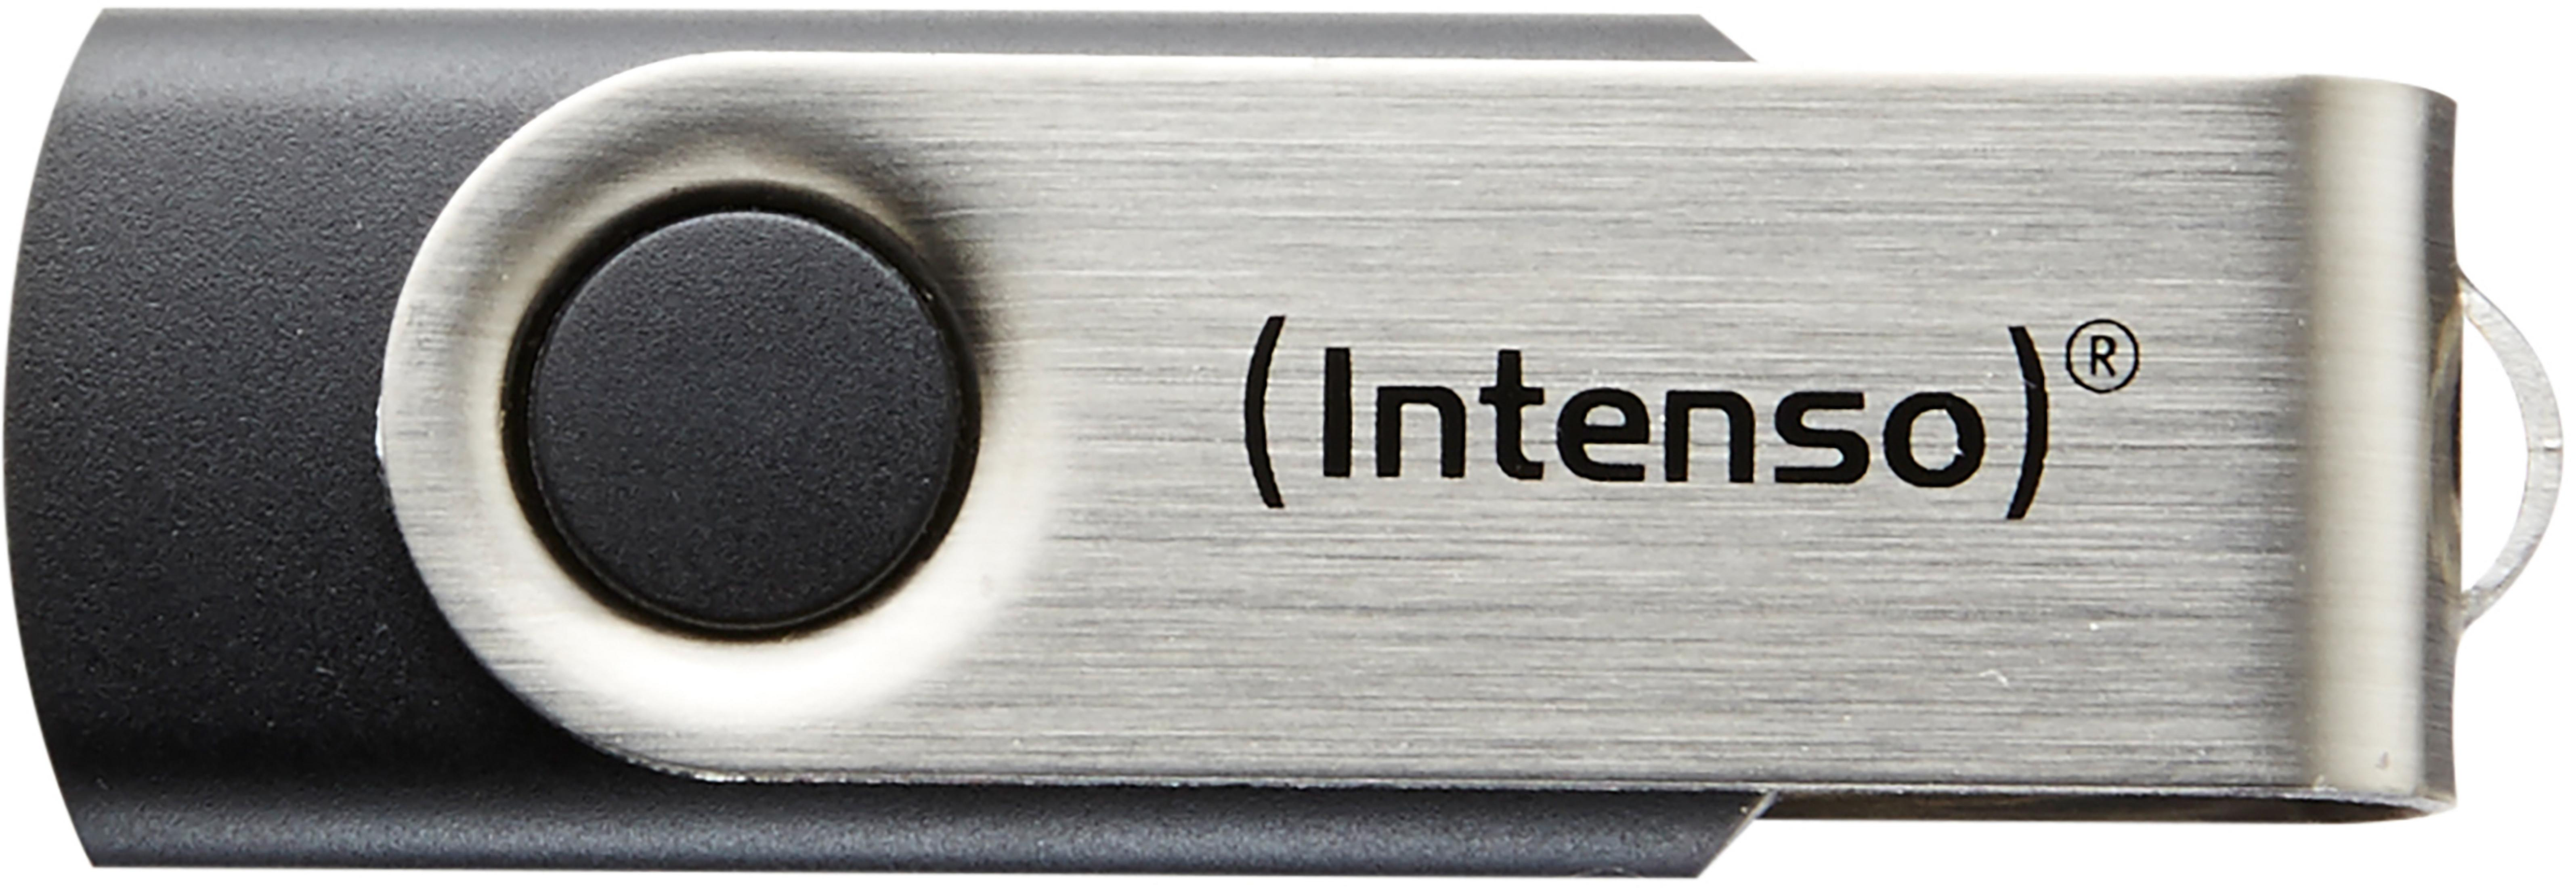 Line GB) 16 16GB (schwarz-silber, INTENSO USB-Stick Basic